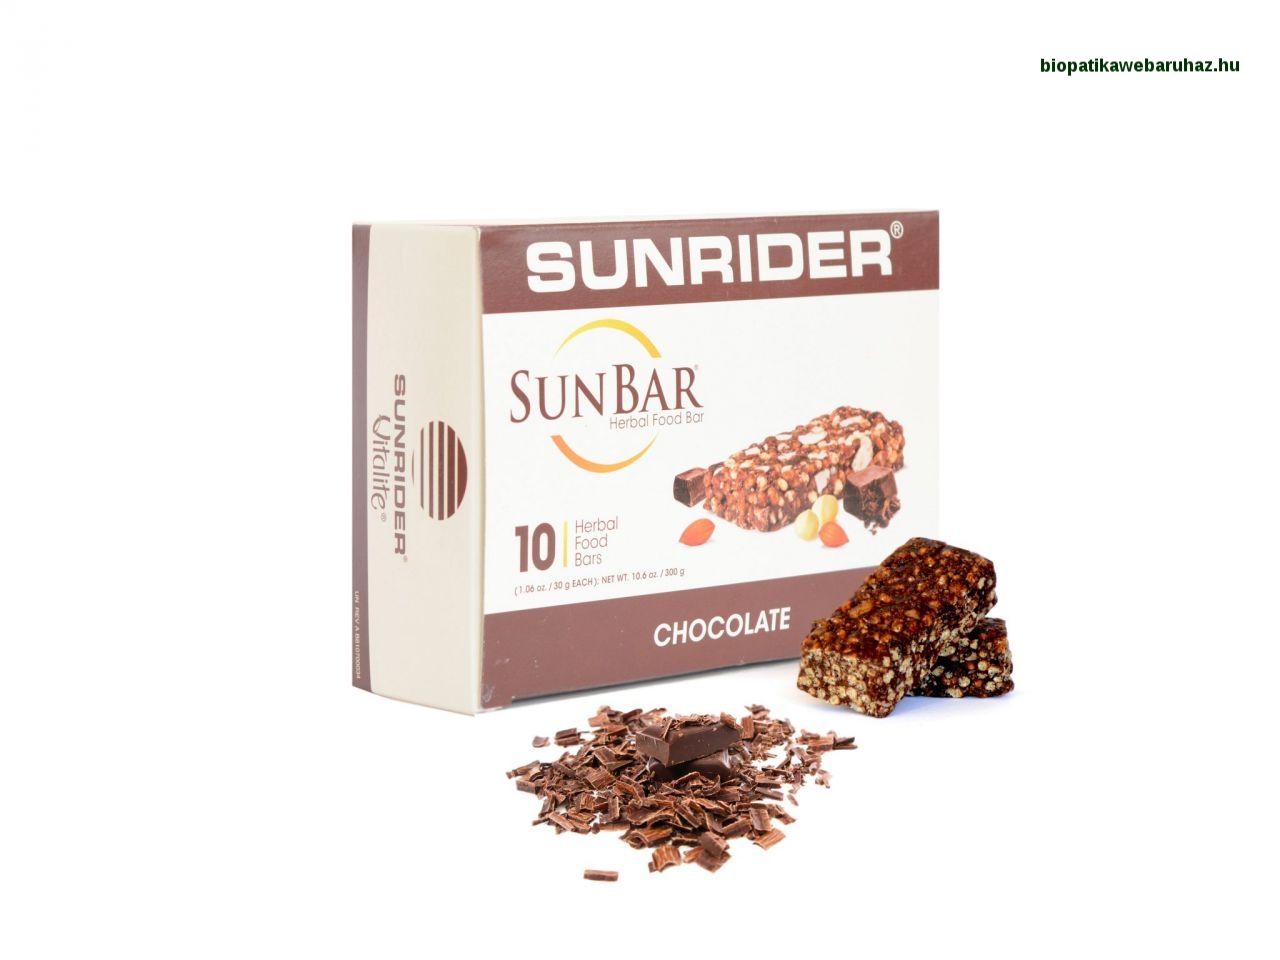 Sunrider SunBar – Az egészséges nasiszelet